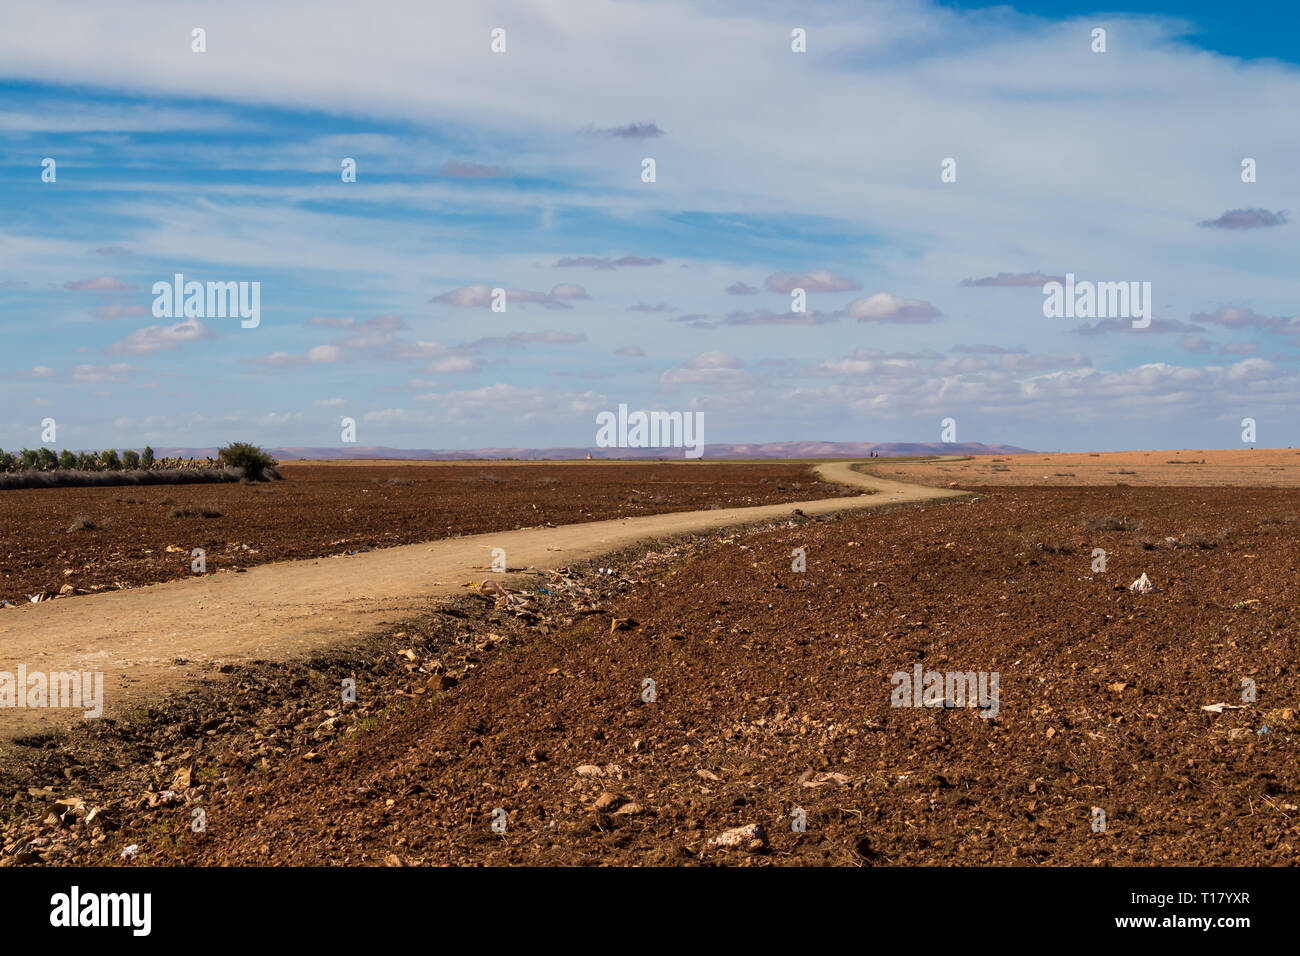 Herbst Felder, bereit für die neue Saison zu kommen, die ein Land geschwungene Straße unterteilt. Horizont im Hintergrund. Blauer Himmel mit weißen Wolken. Morocc Stockfoto